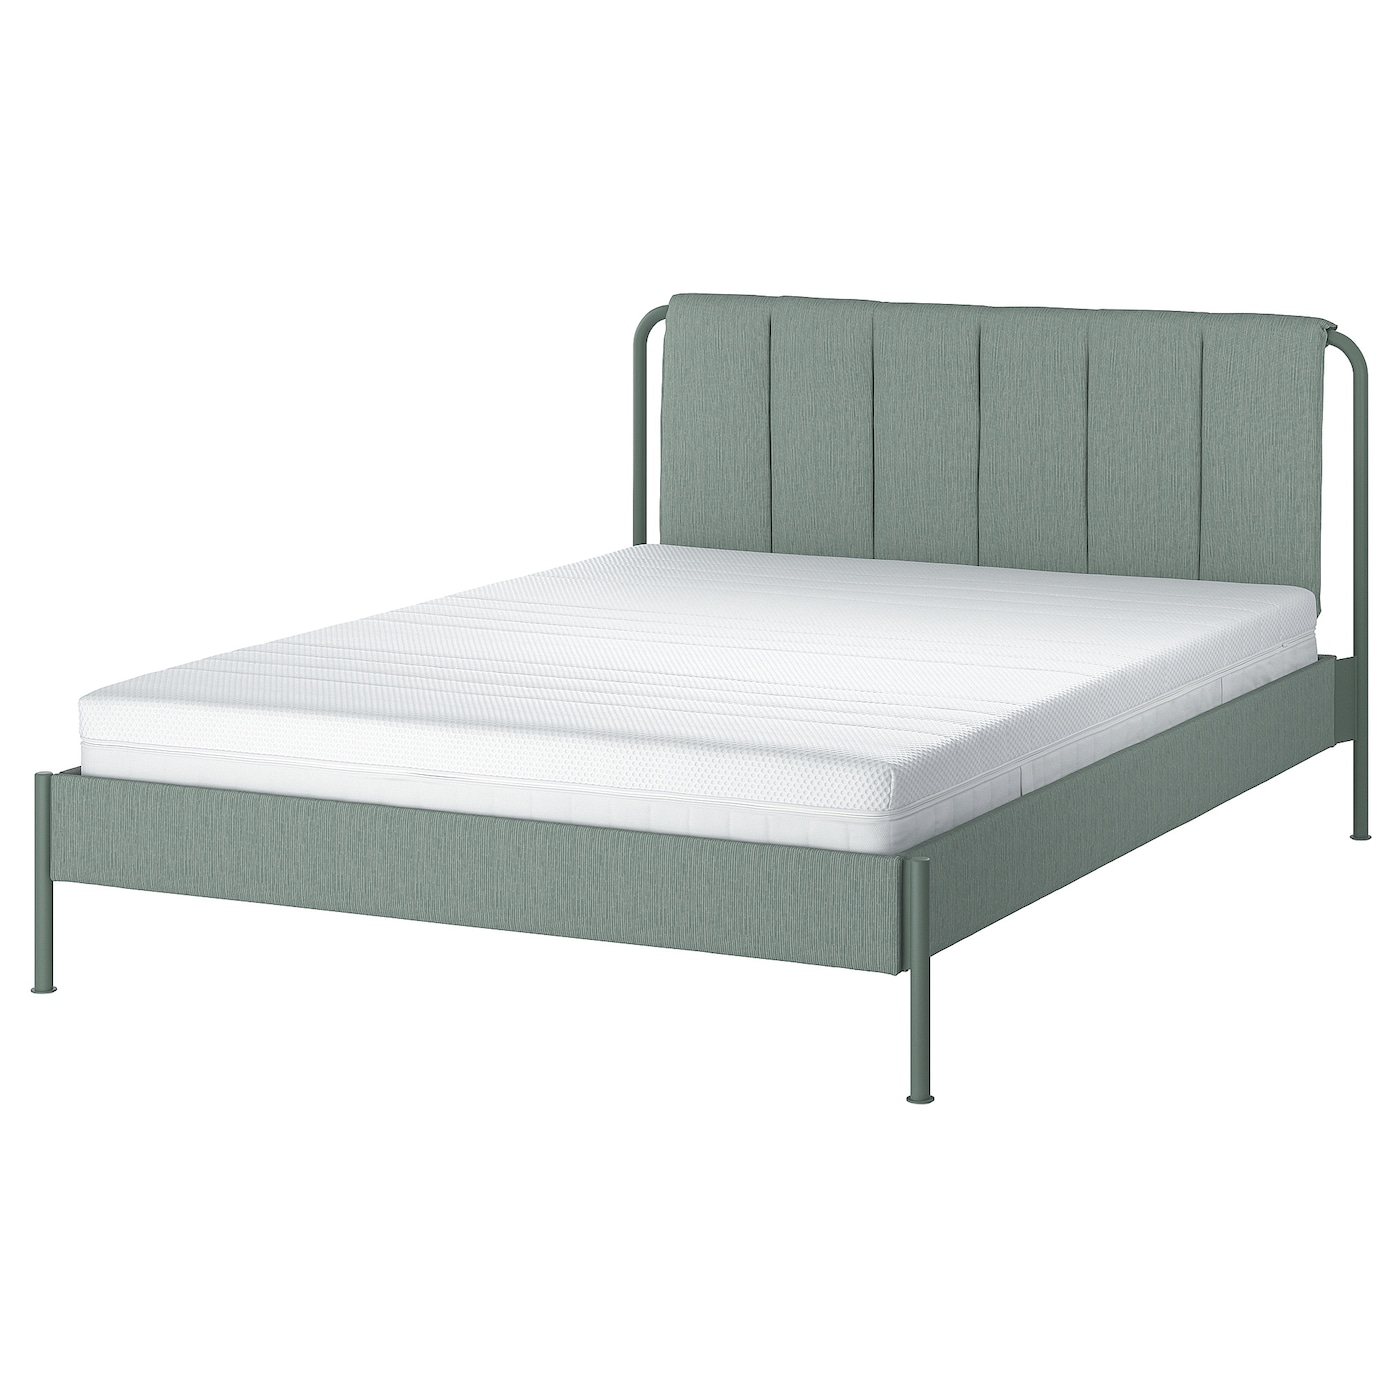 Каркас кровати мягкий с матрасом - IKEA TÄLLÅSEN/TALLASEN, 200х160 см, матрас жесткий, серо-зеленый, ТЭЛЛАСОН ИКЕА